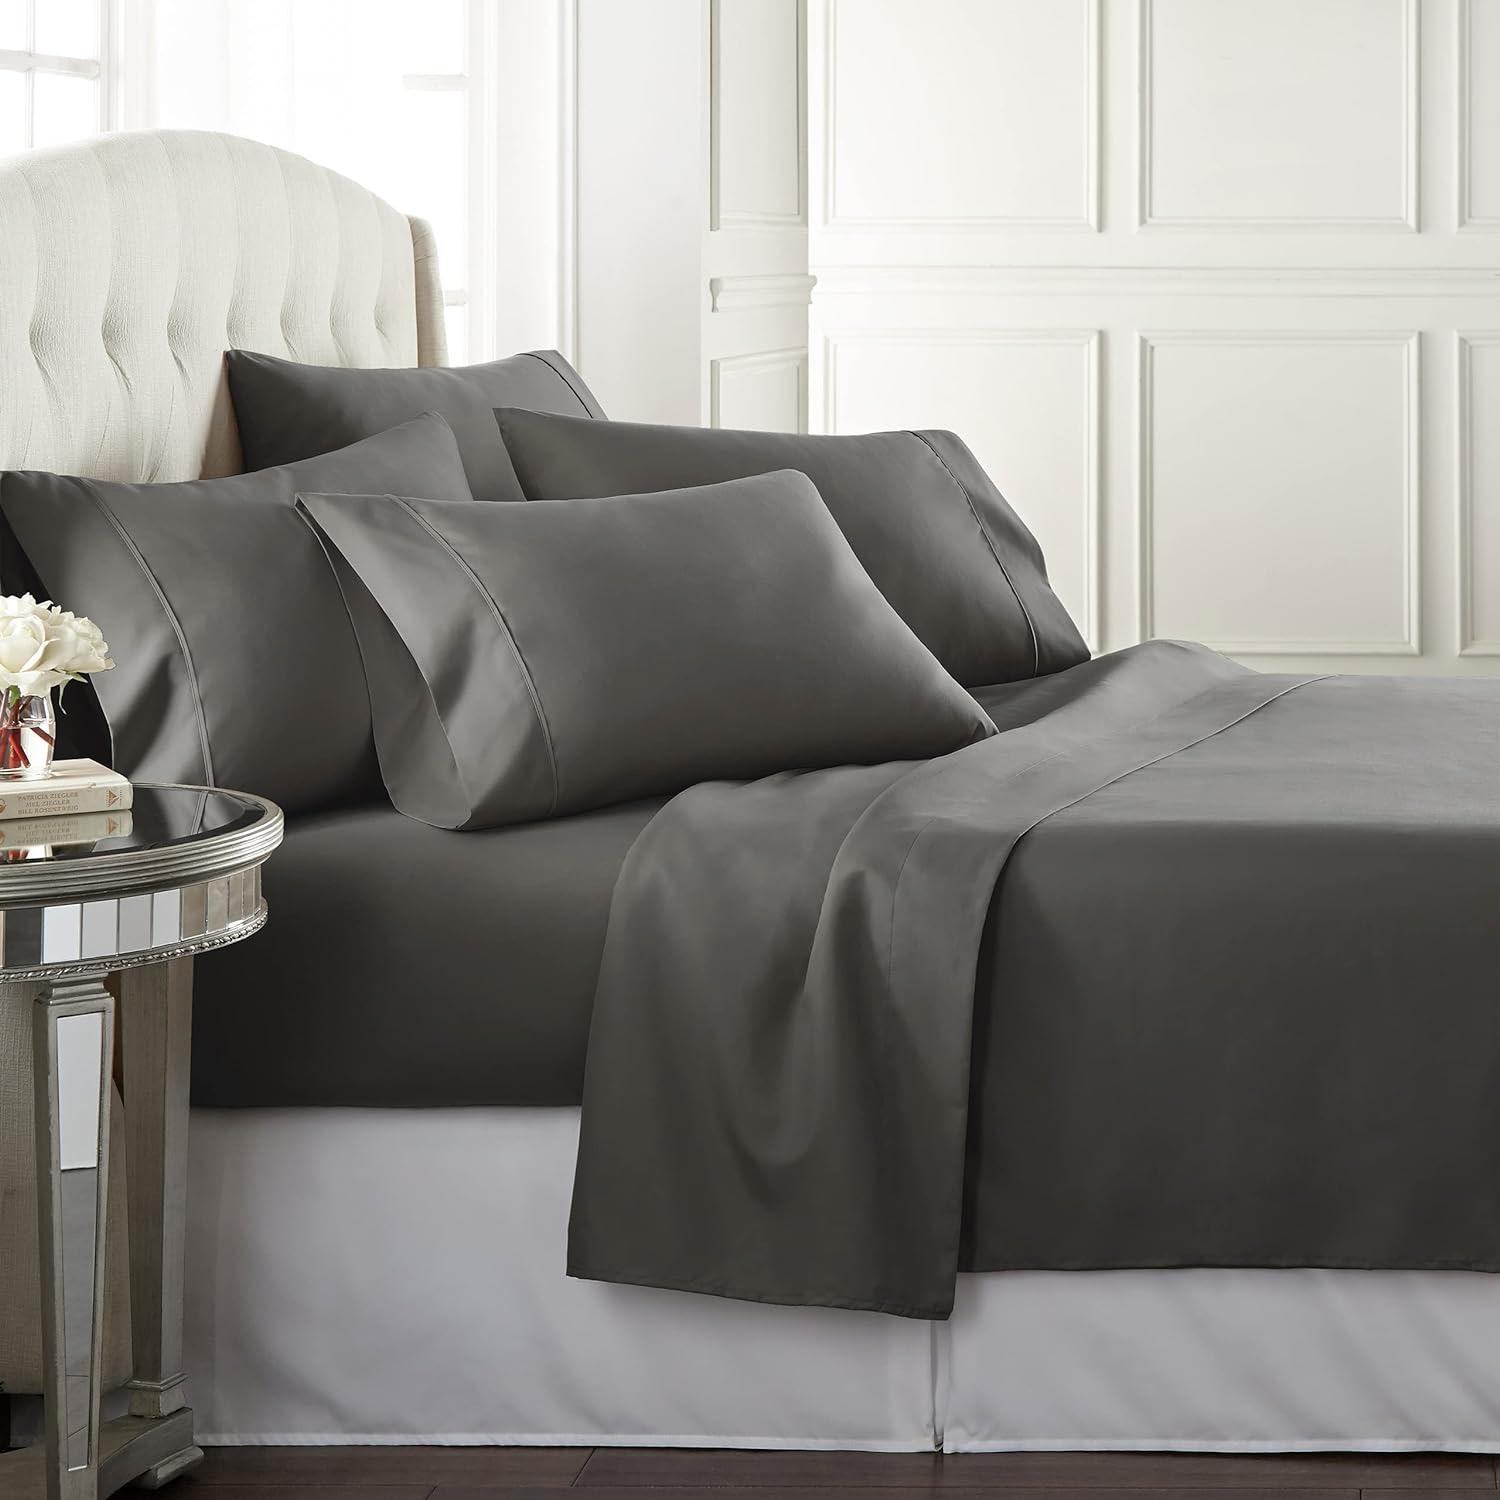 Danjor Linens Queen Bed Sheet Set for $9.99